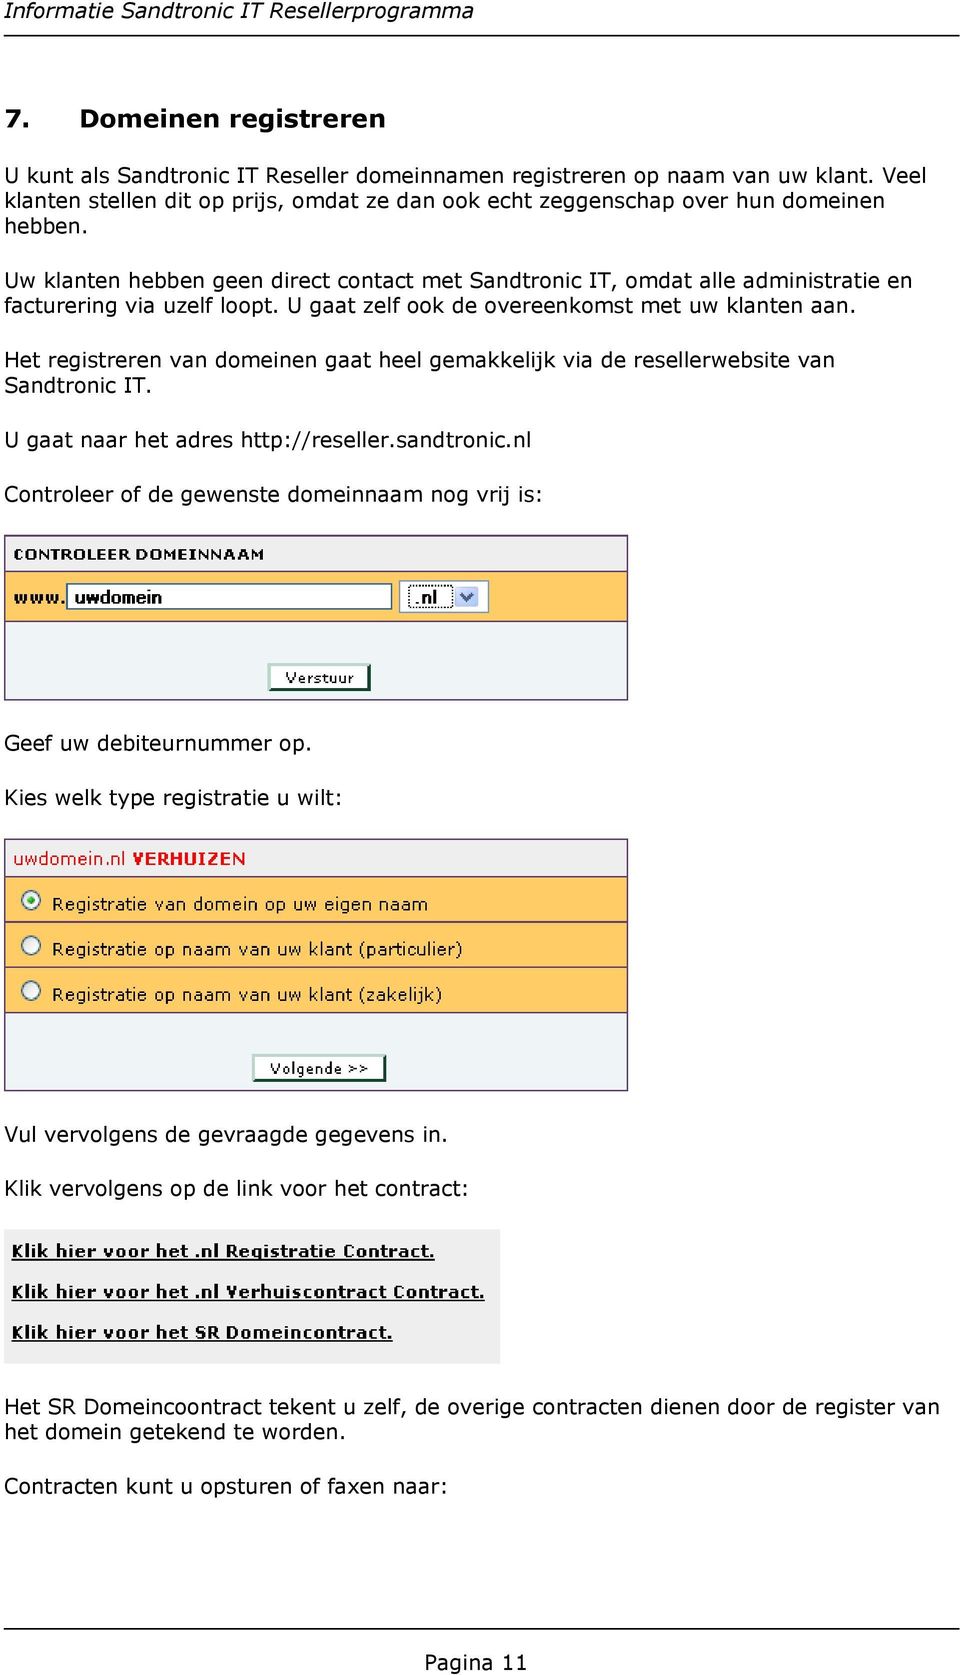 Het registreren van domeinen gaat heel gemakkelijk via de resellerwebsite van Sandtronic IT. U gaat naar het adres http://reseller.sandtronic.